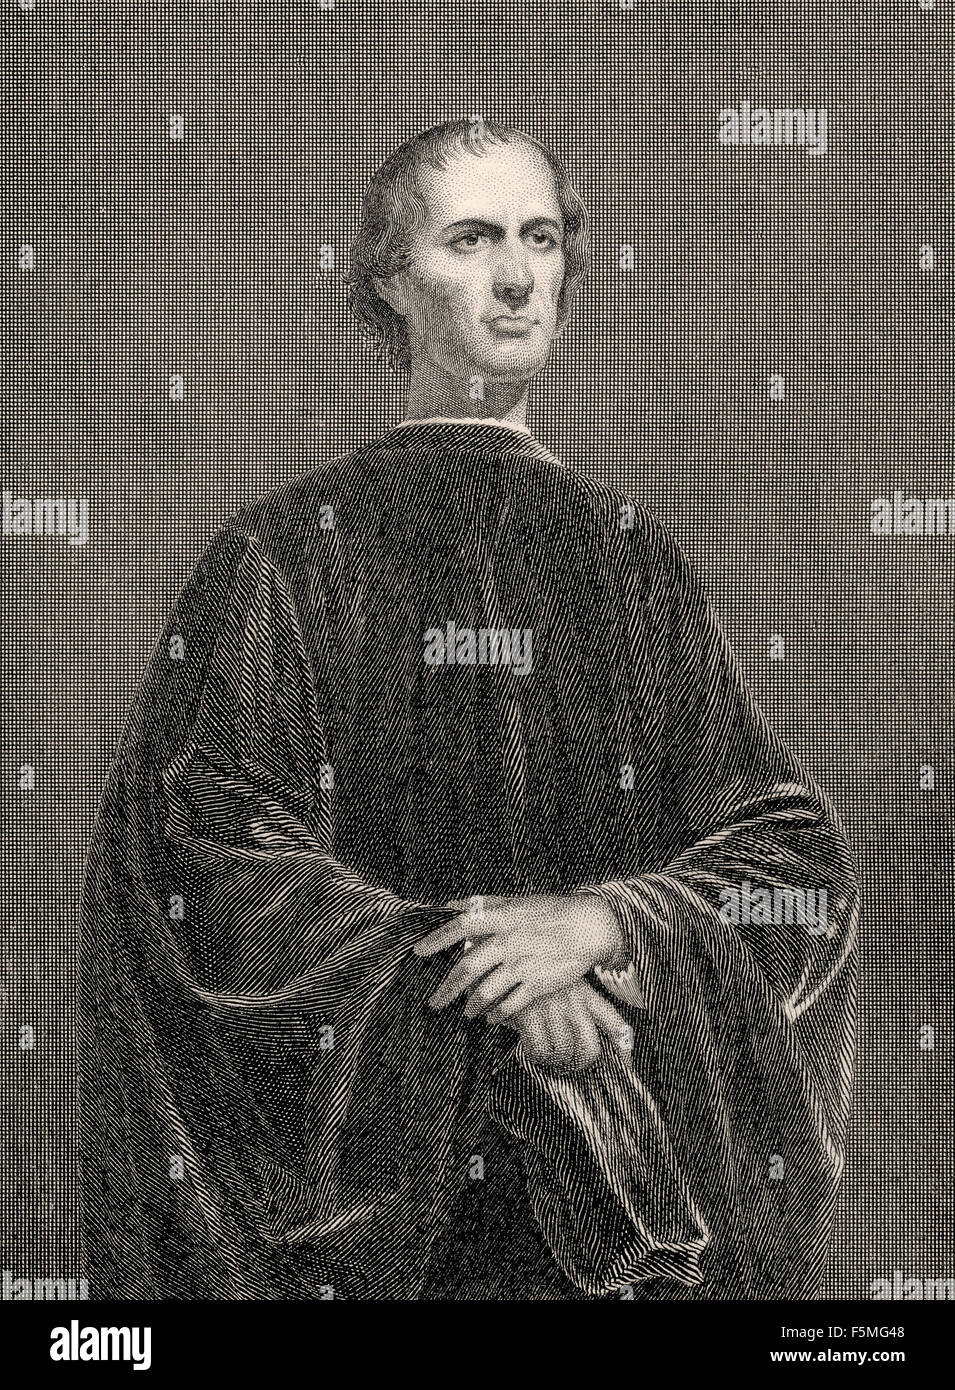 Machiavell ou Niccolò Machiavelli, 1469-1527, dans la tragédie Egmont de Johann Wolfgang von Goethe Banque D'Images